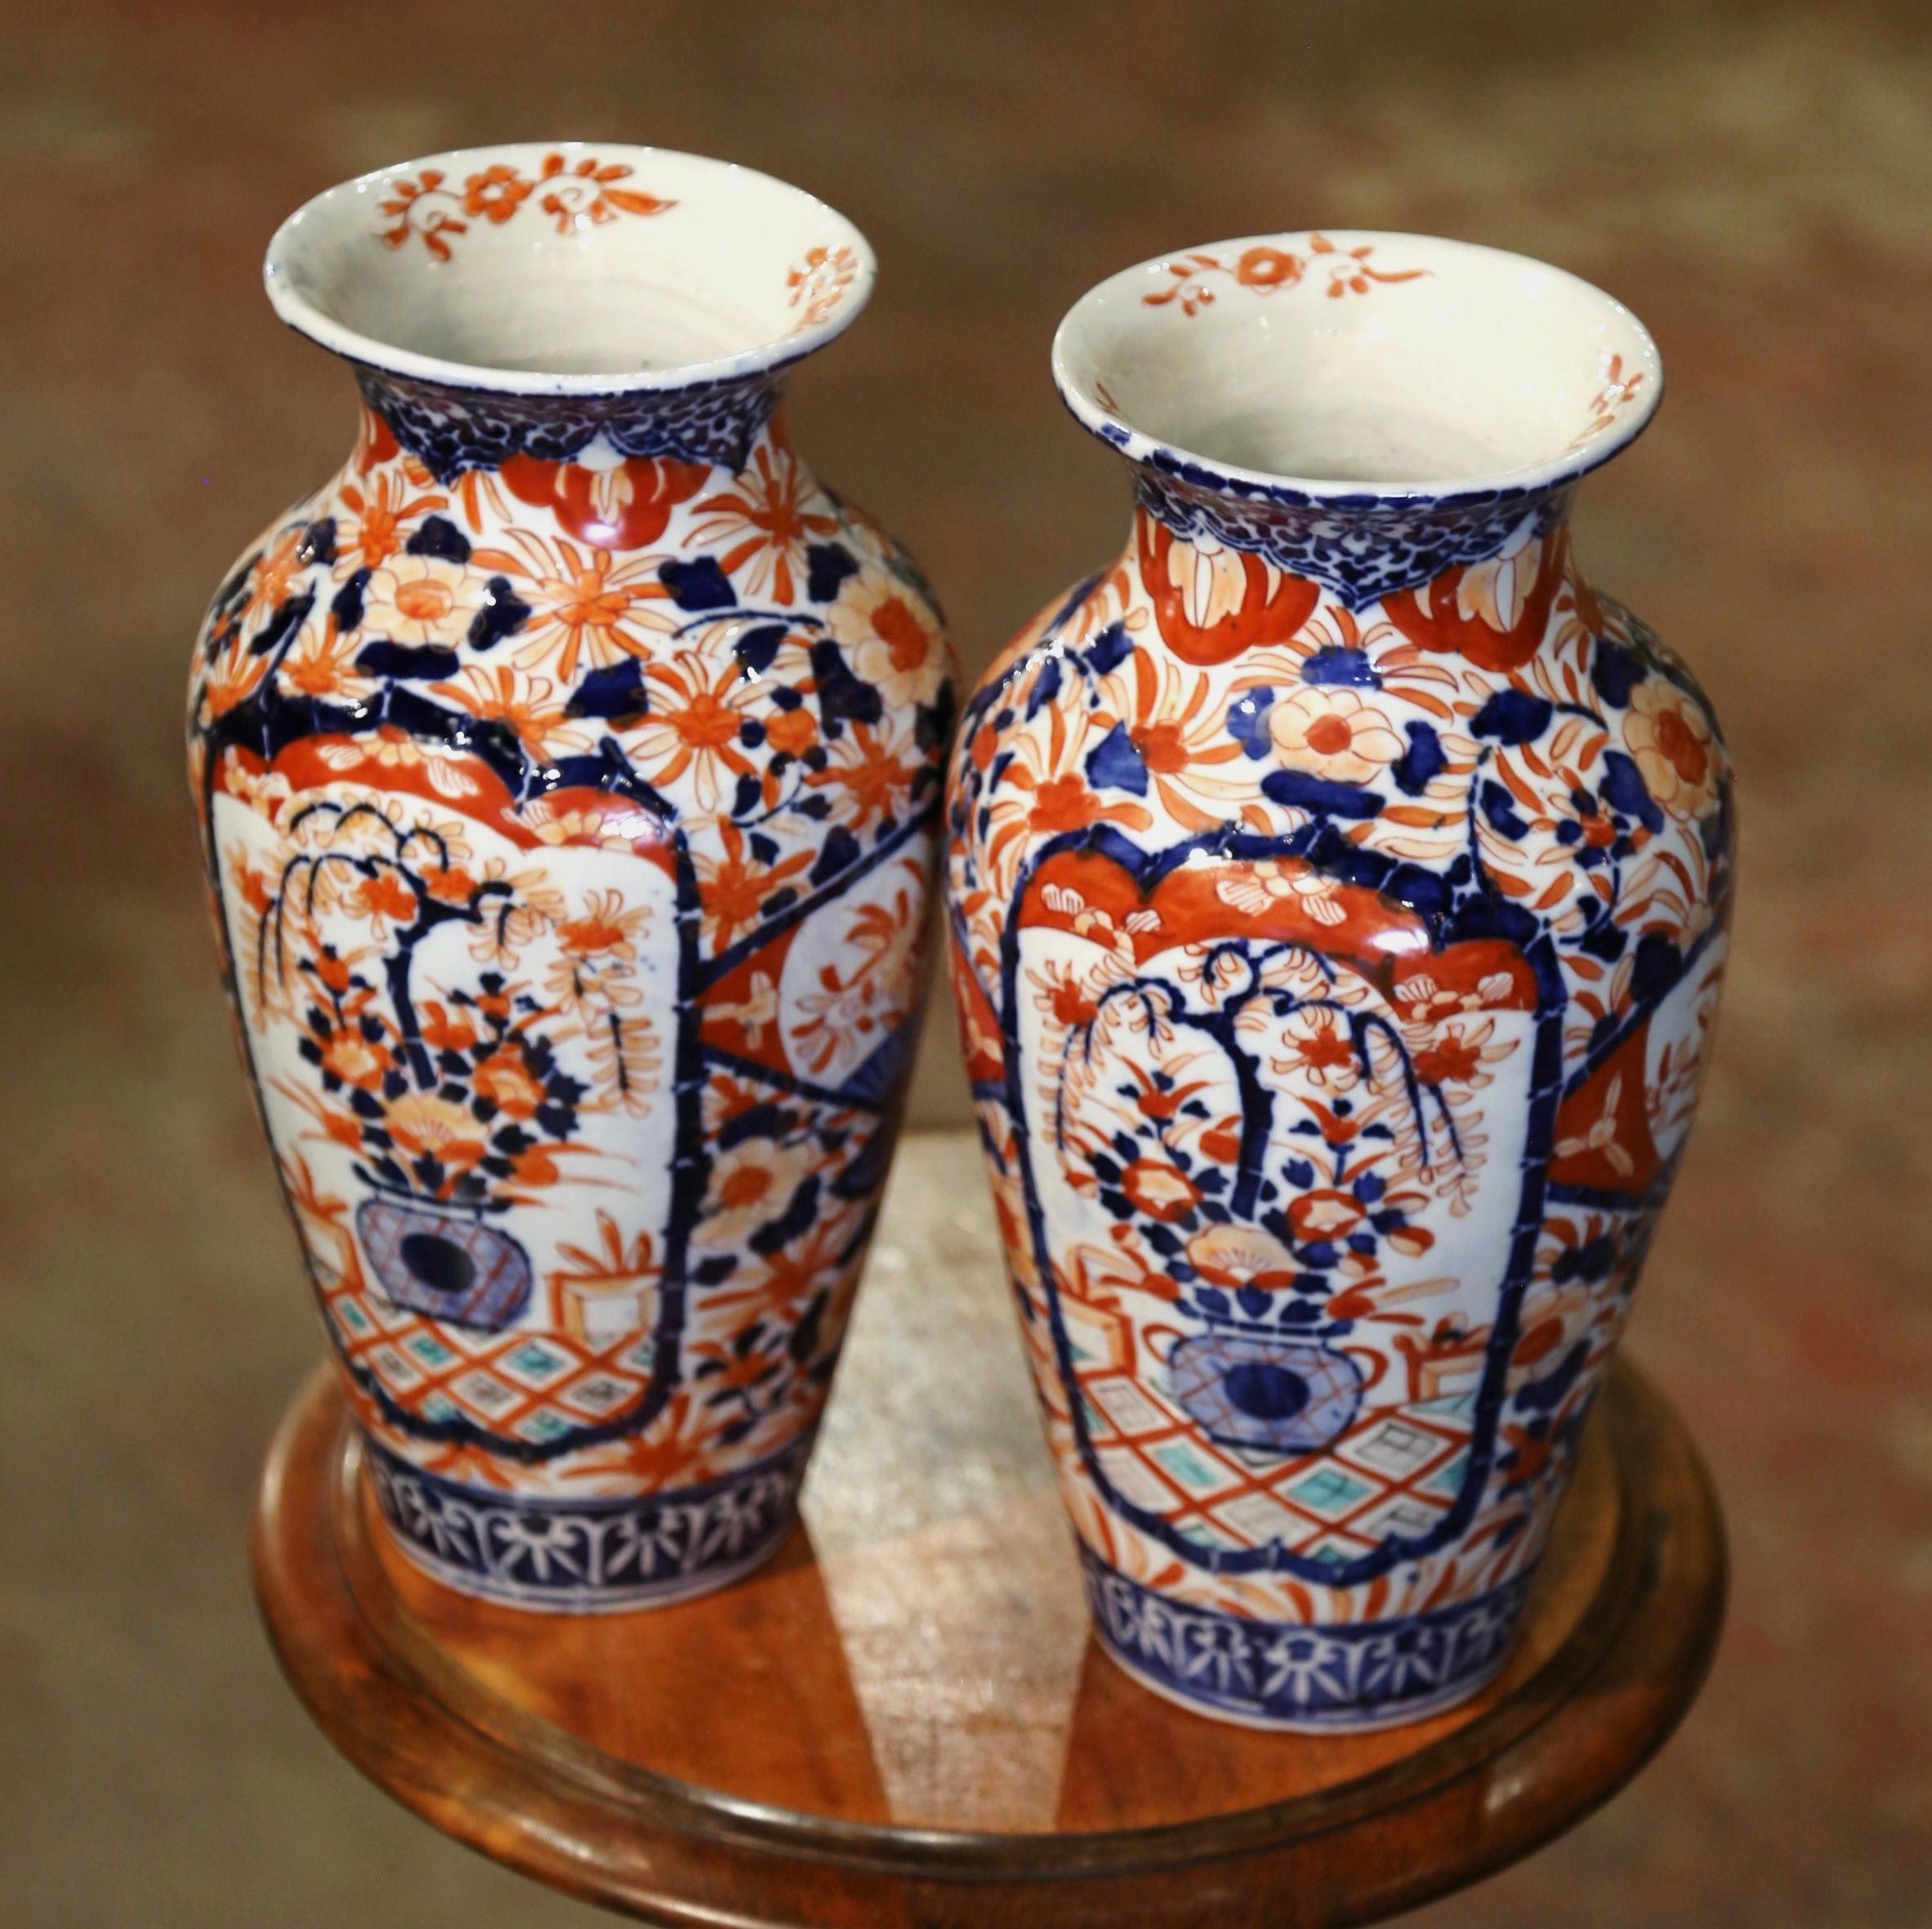 Décorez une cheminée ou un buffet avec cette paire de vases Imari anciens très colorés. Fabriqués au Japon vers 1880 et de forme ronde, les récipients en céramique sont peints à la main de motifs floraux et végétaux dans la palette traditionnelle